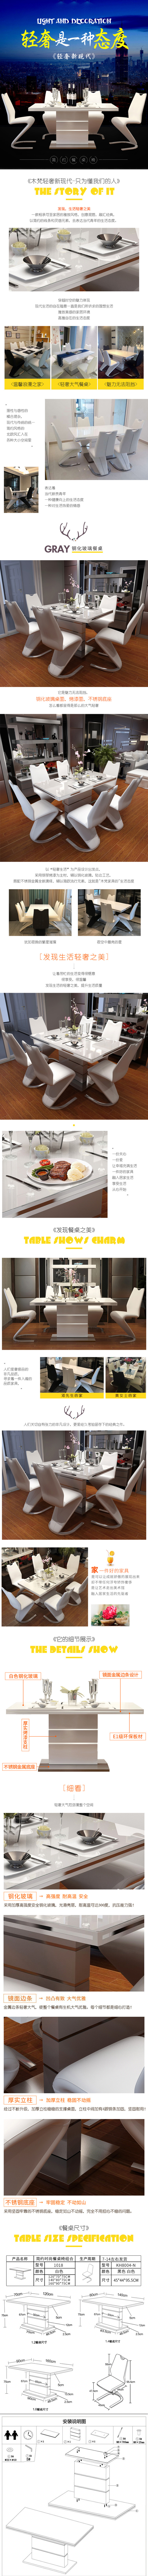 淘宝美工阿雅现代简约轻奢大气钢化玻璃餐桌作品